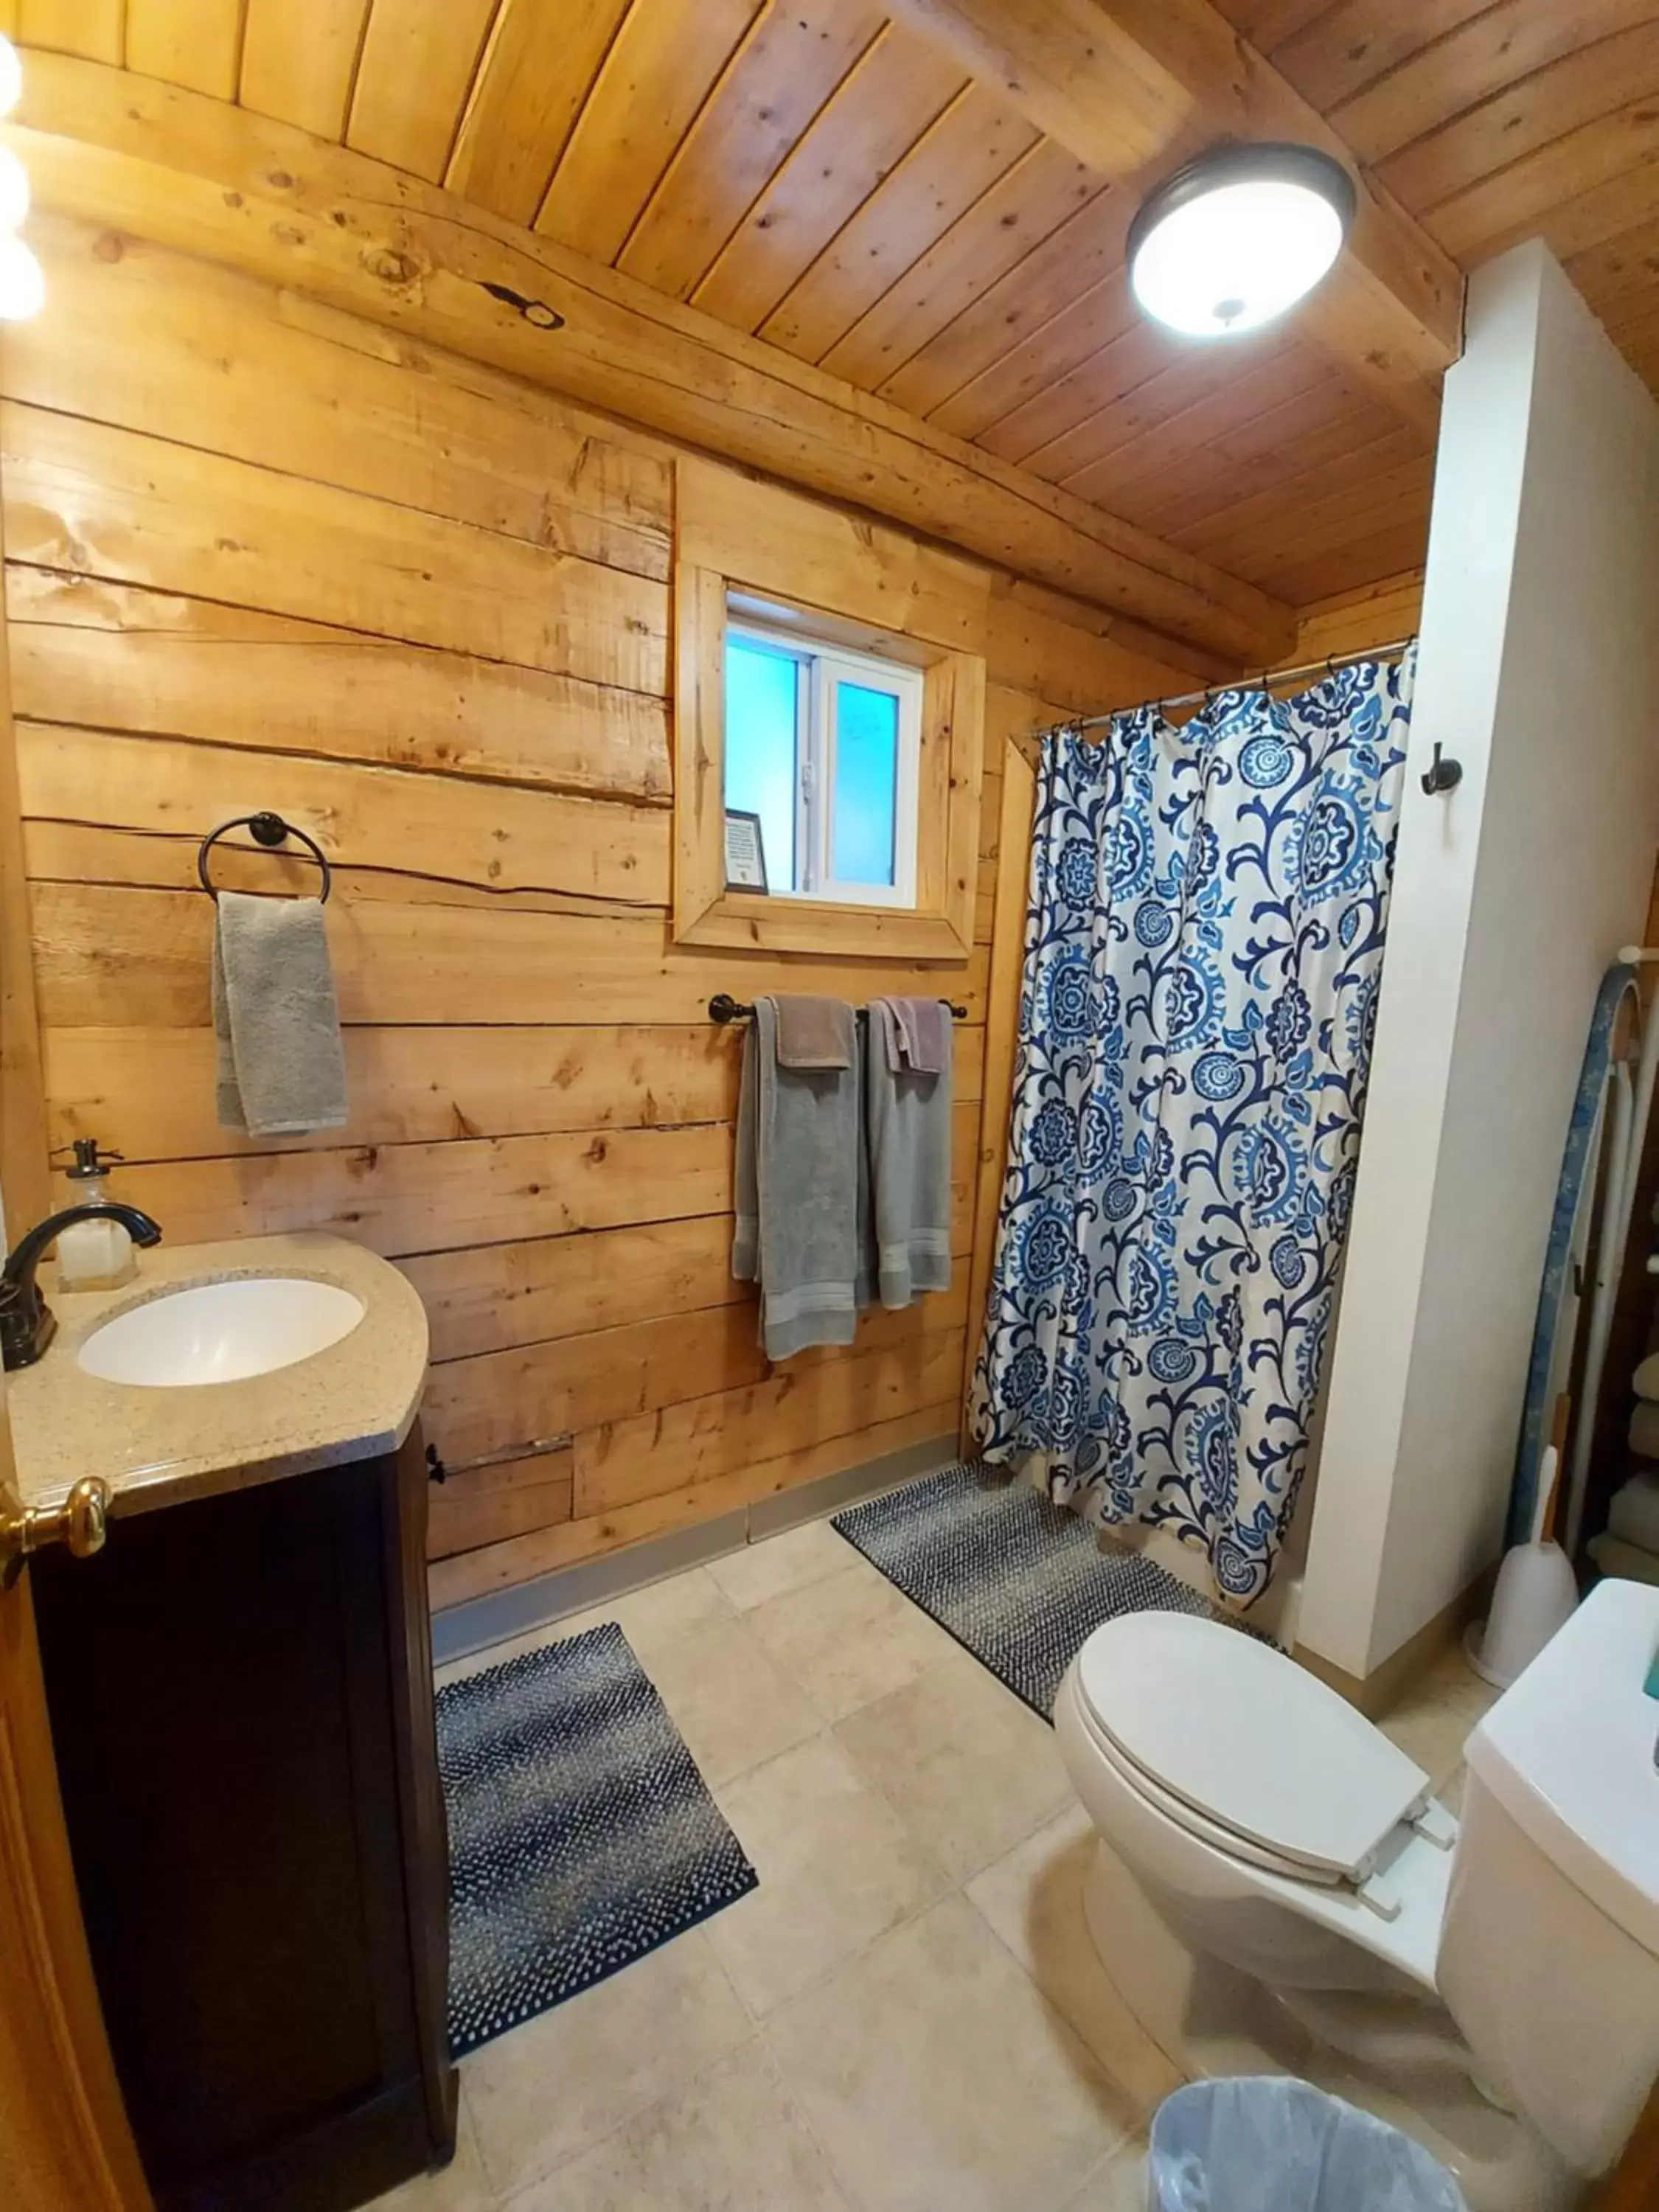 Bathroom in Hatcher Pass Cabins